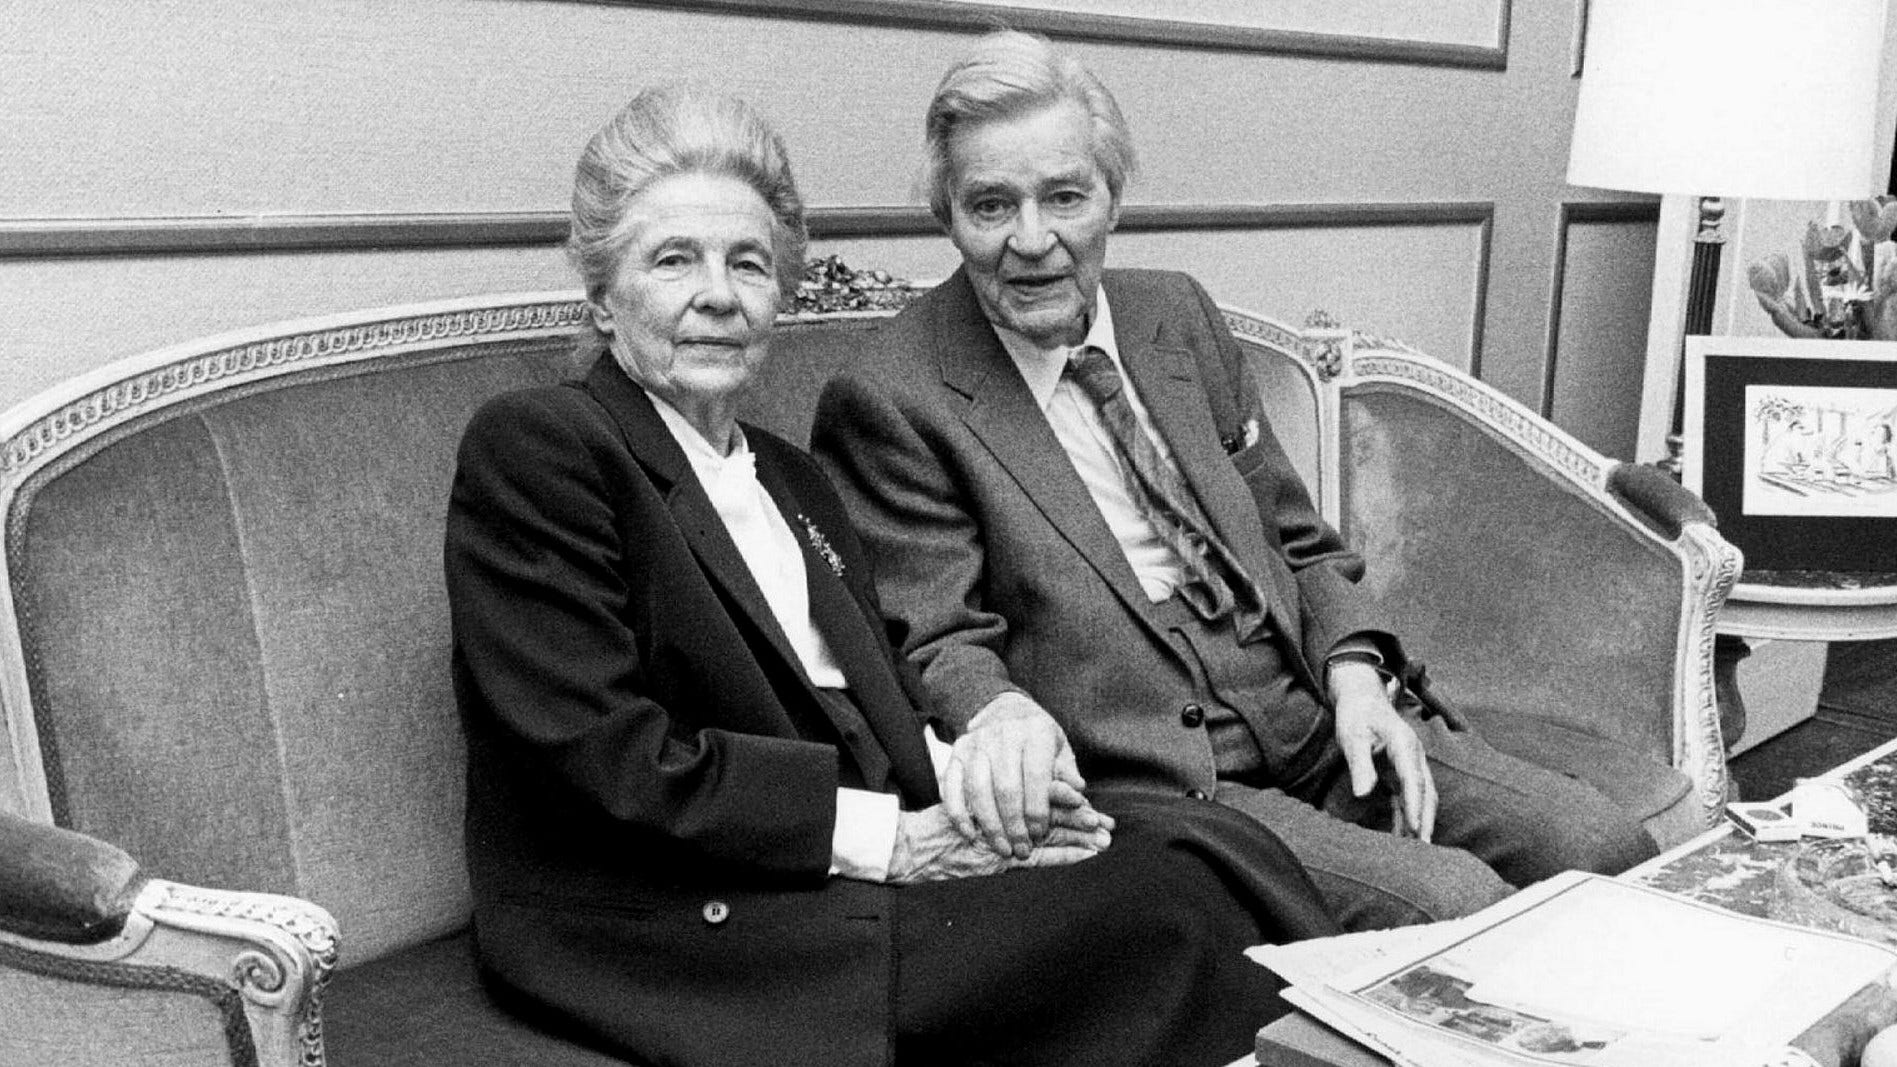 Kaj Fölster har i en tidigare insändare skrivit att hennes föräldrar Alva och Gunnar Myrdal, arkitekter bakom den socialdemokratiska välfärdspolitiken, när de båda var svårt sjuka ”ville avsluta sina liv tillsammans”. Alva Myrdal avled 1986 och maken Gunnar 1987.